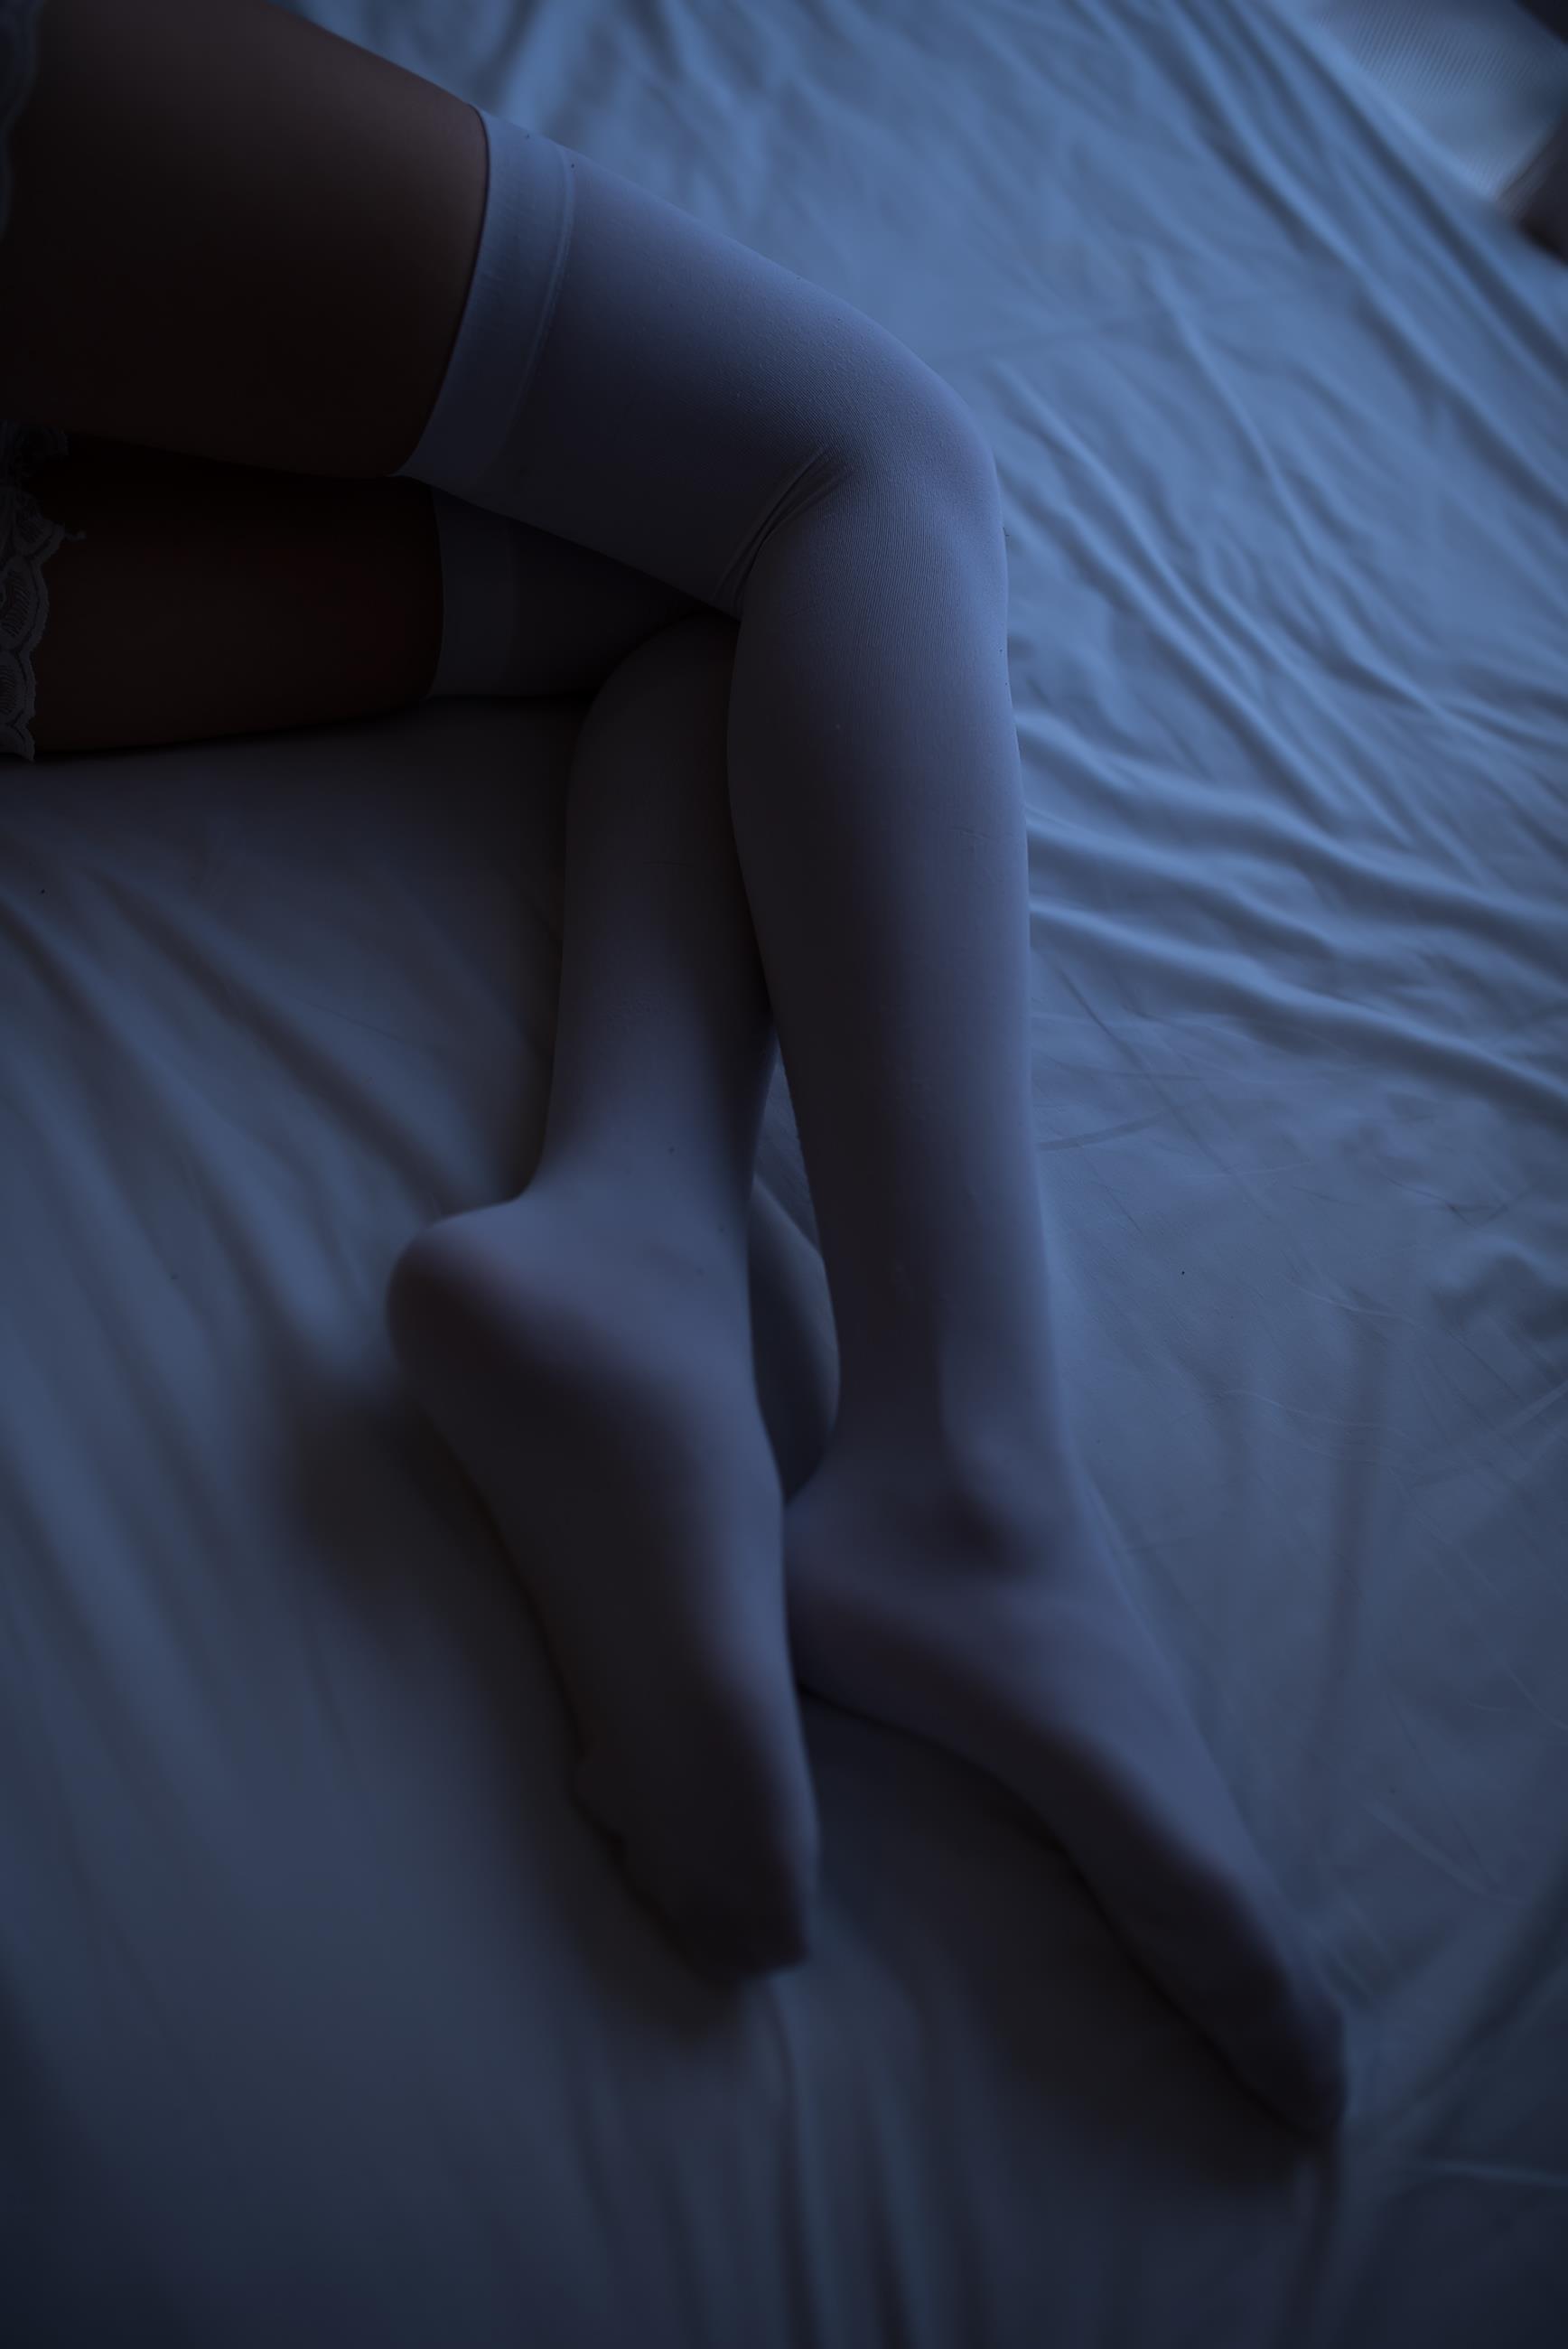 [风之领域]NO.046 性感小萝莉 白色吊带蕾丝睡衣裙加白色丝袜美腿私房写真集,